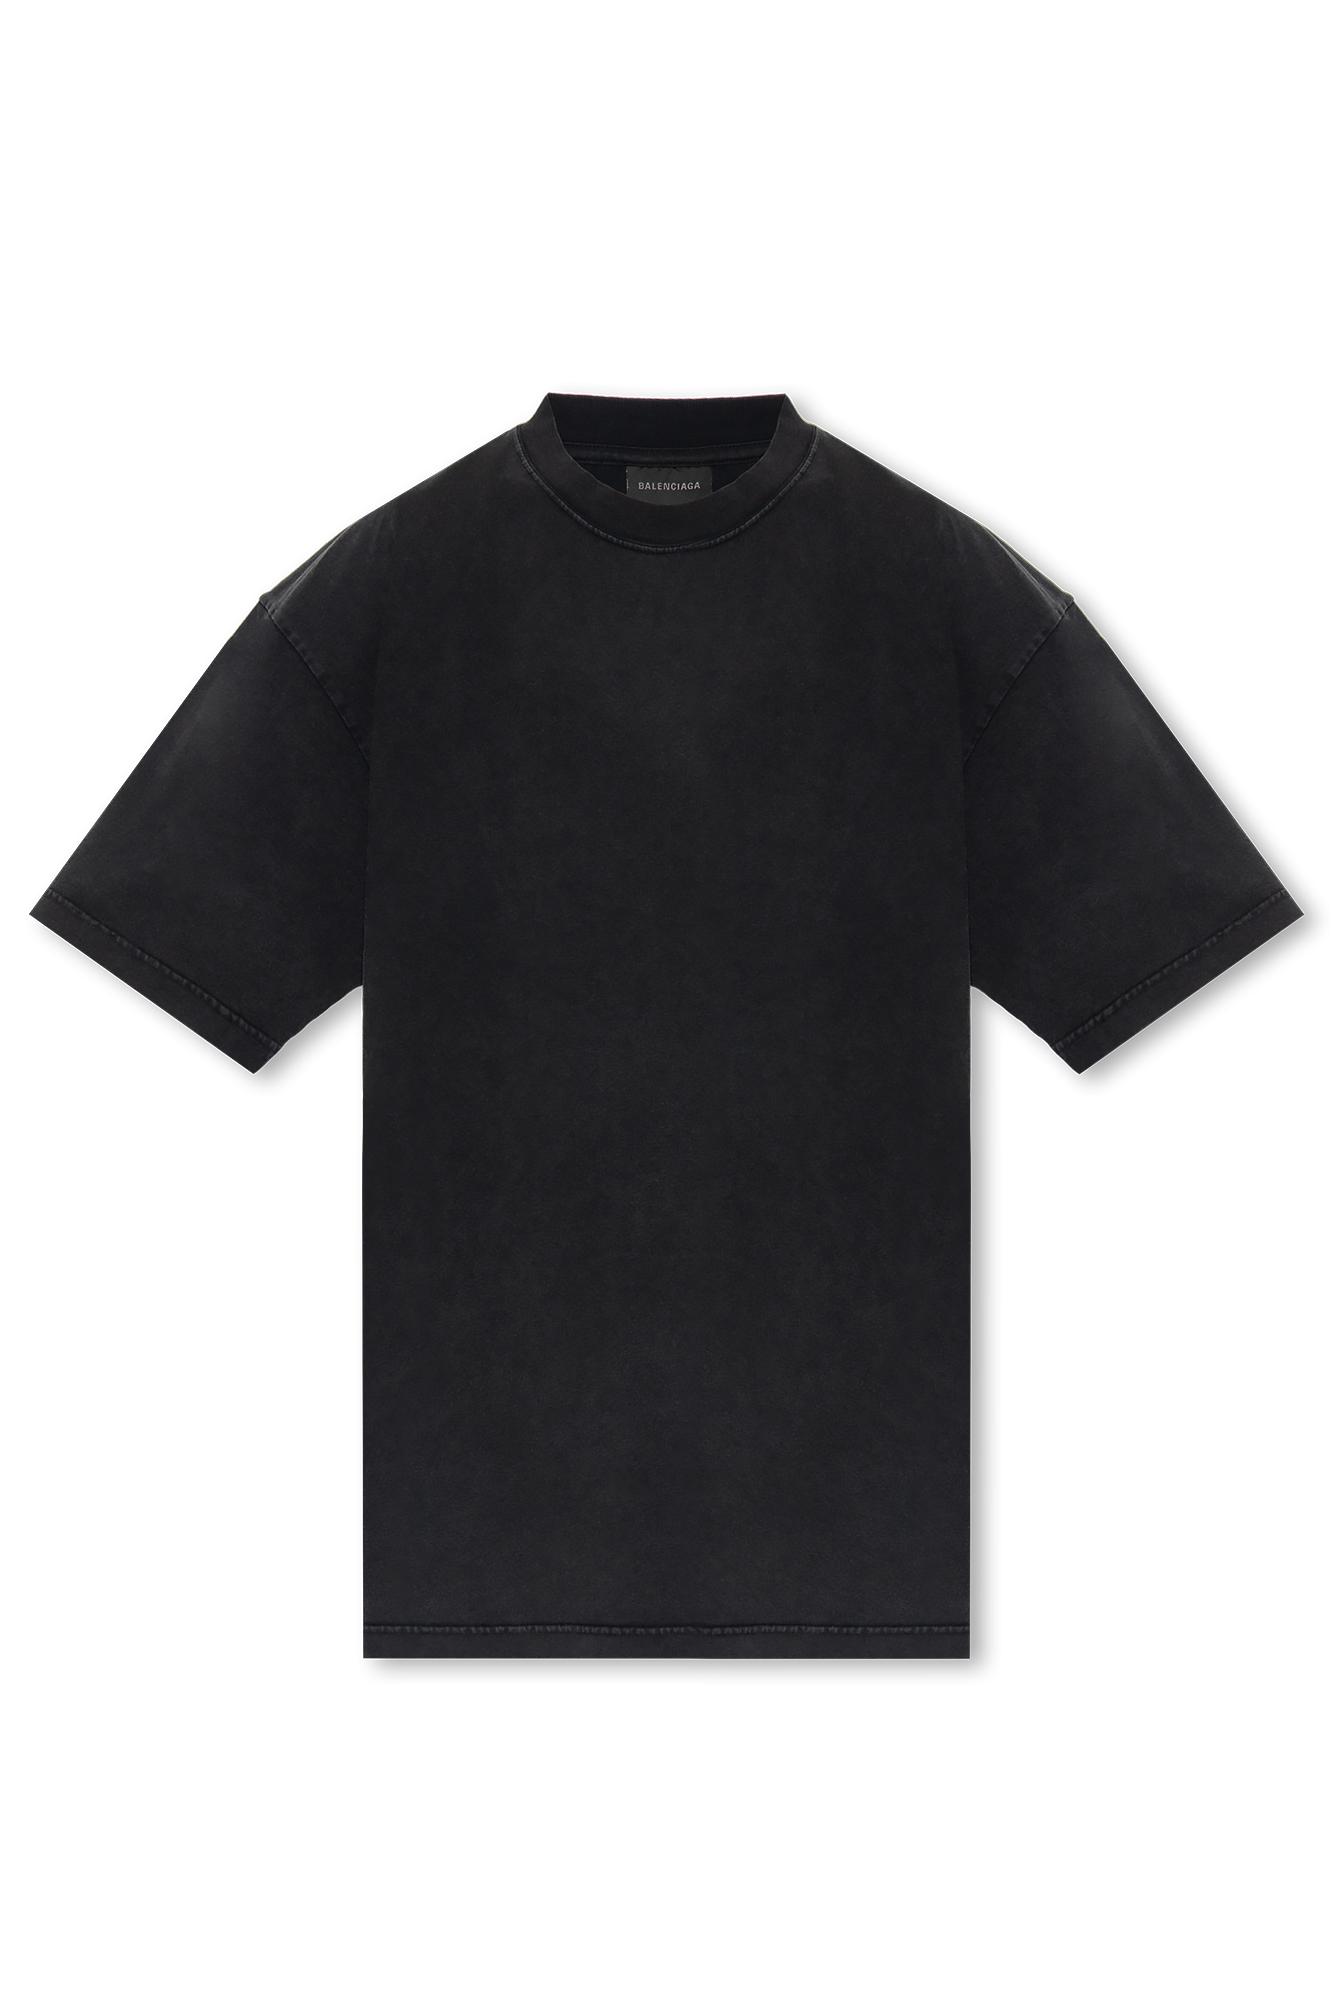 Balenciaga T-shirt With Rhinestone Logo in Black | Lyst